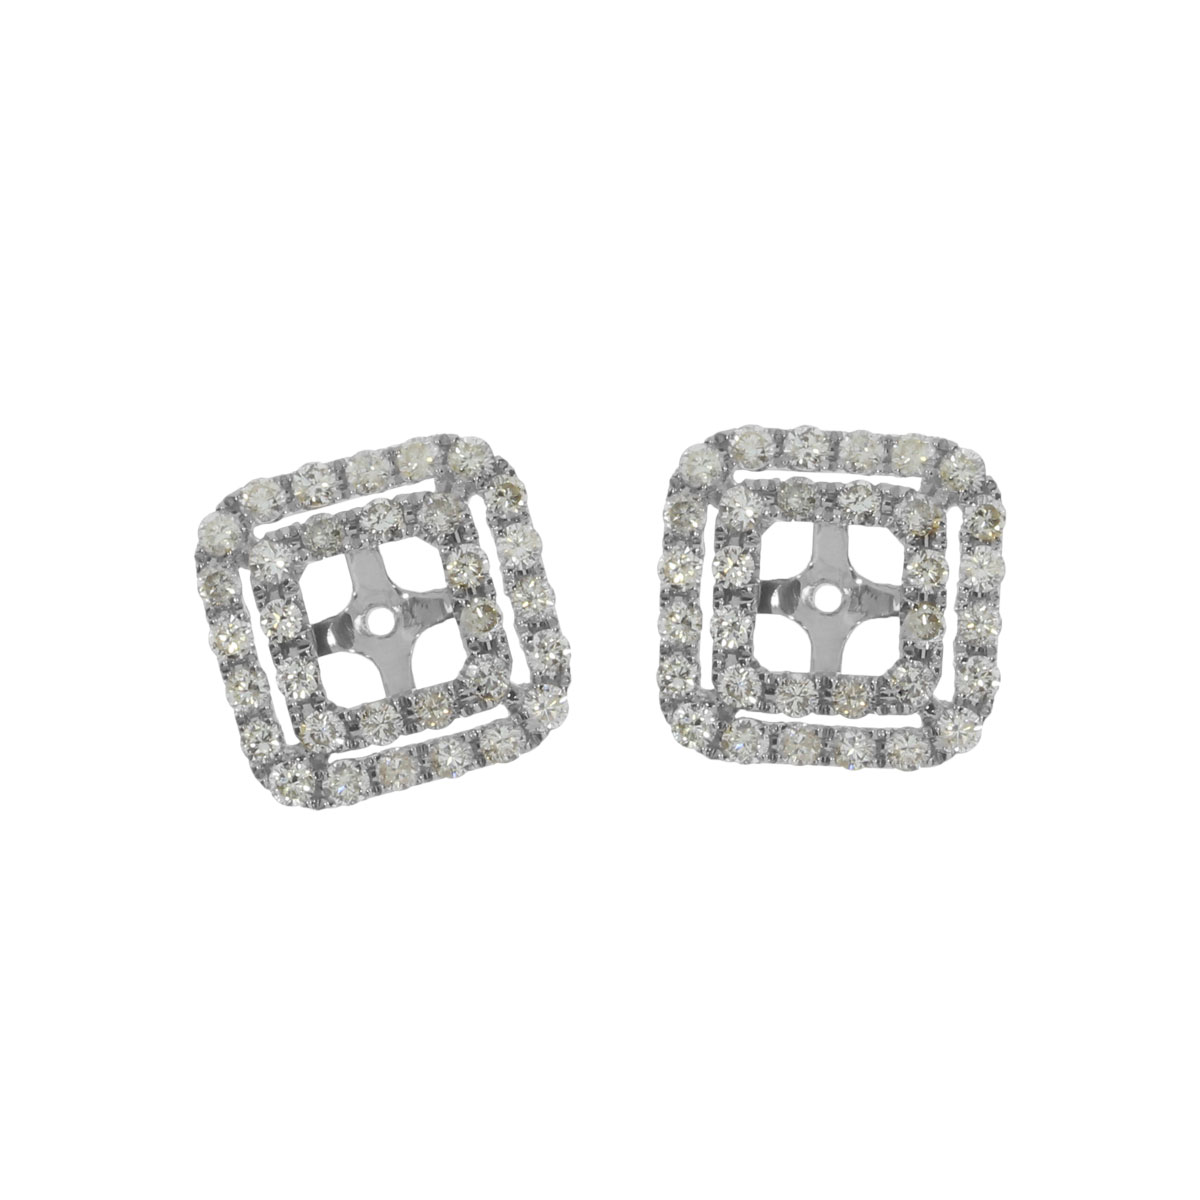 JCX2468: 10.2 ct diamond earring jackets in 14k white gold.